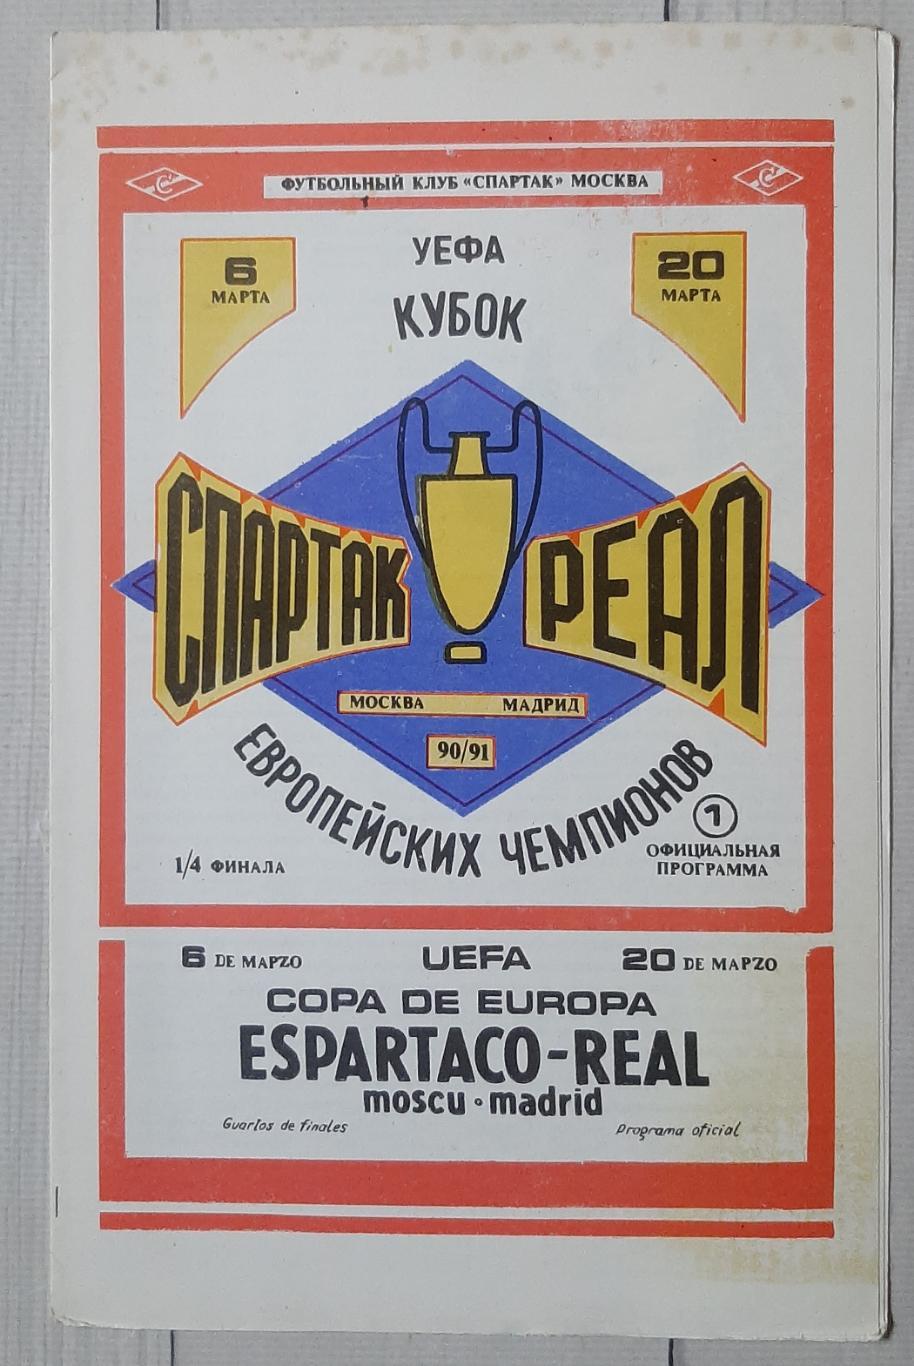 Спартак Москва - Реал Мадрид Іспанія 06.03.1991. КЕЧ.